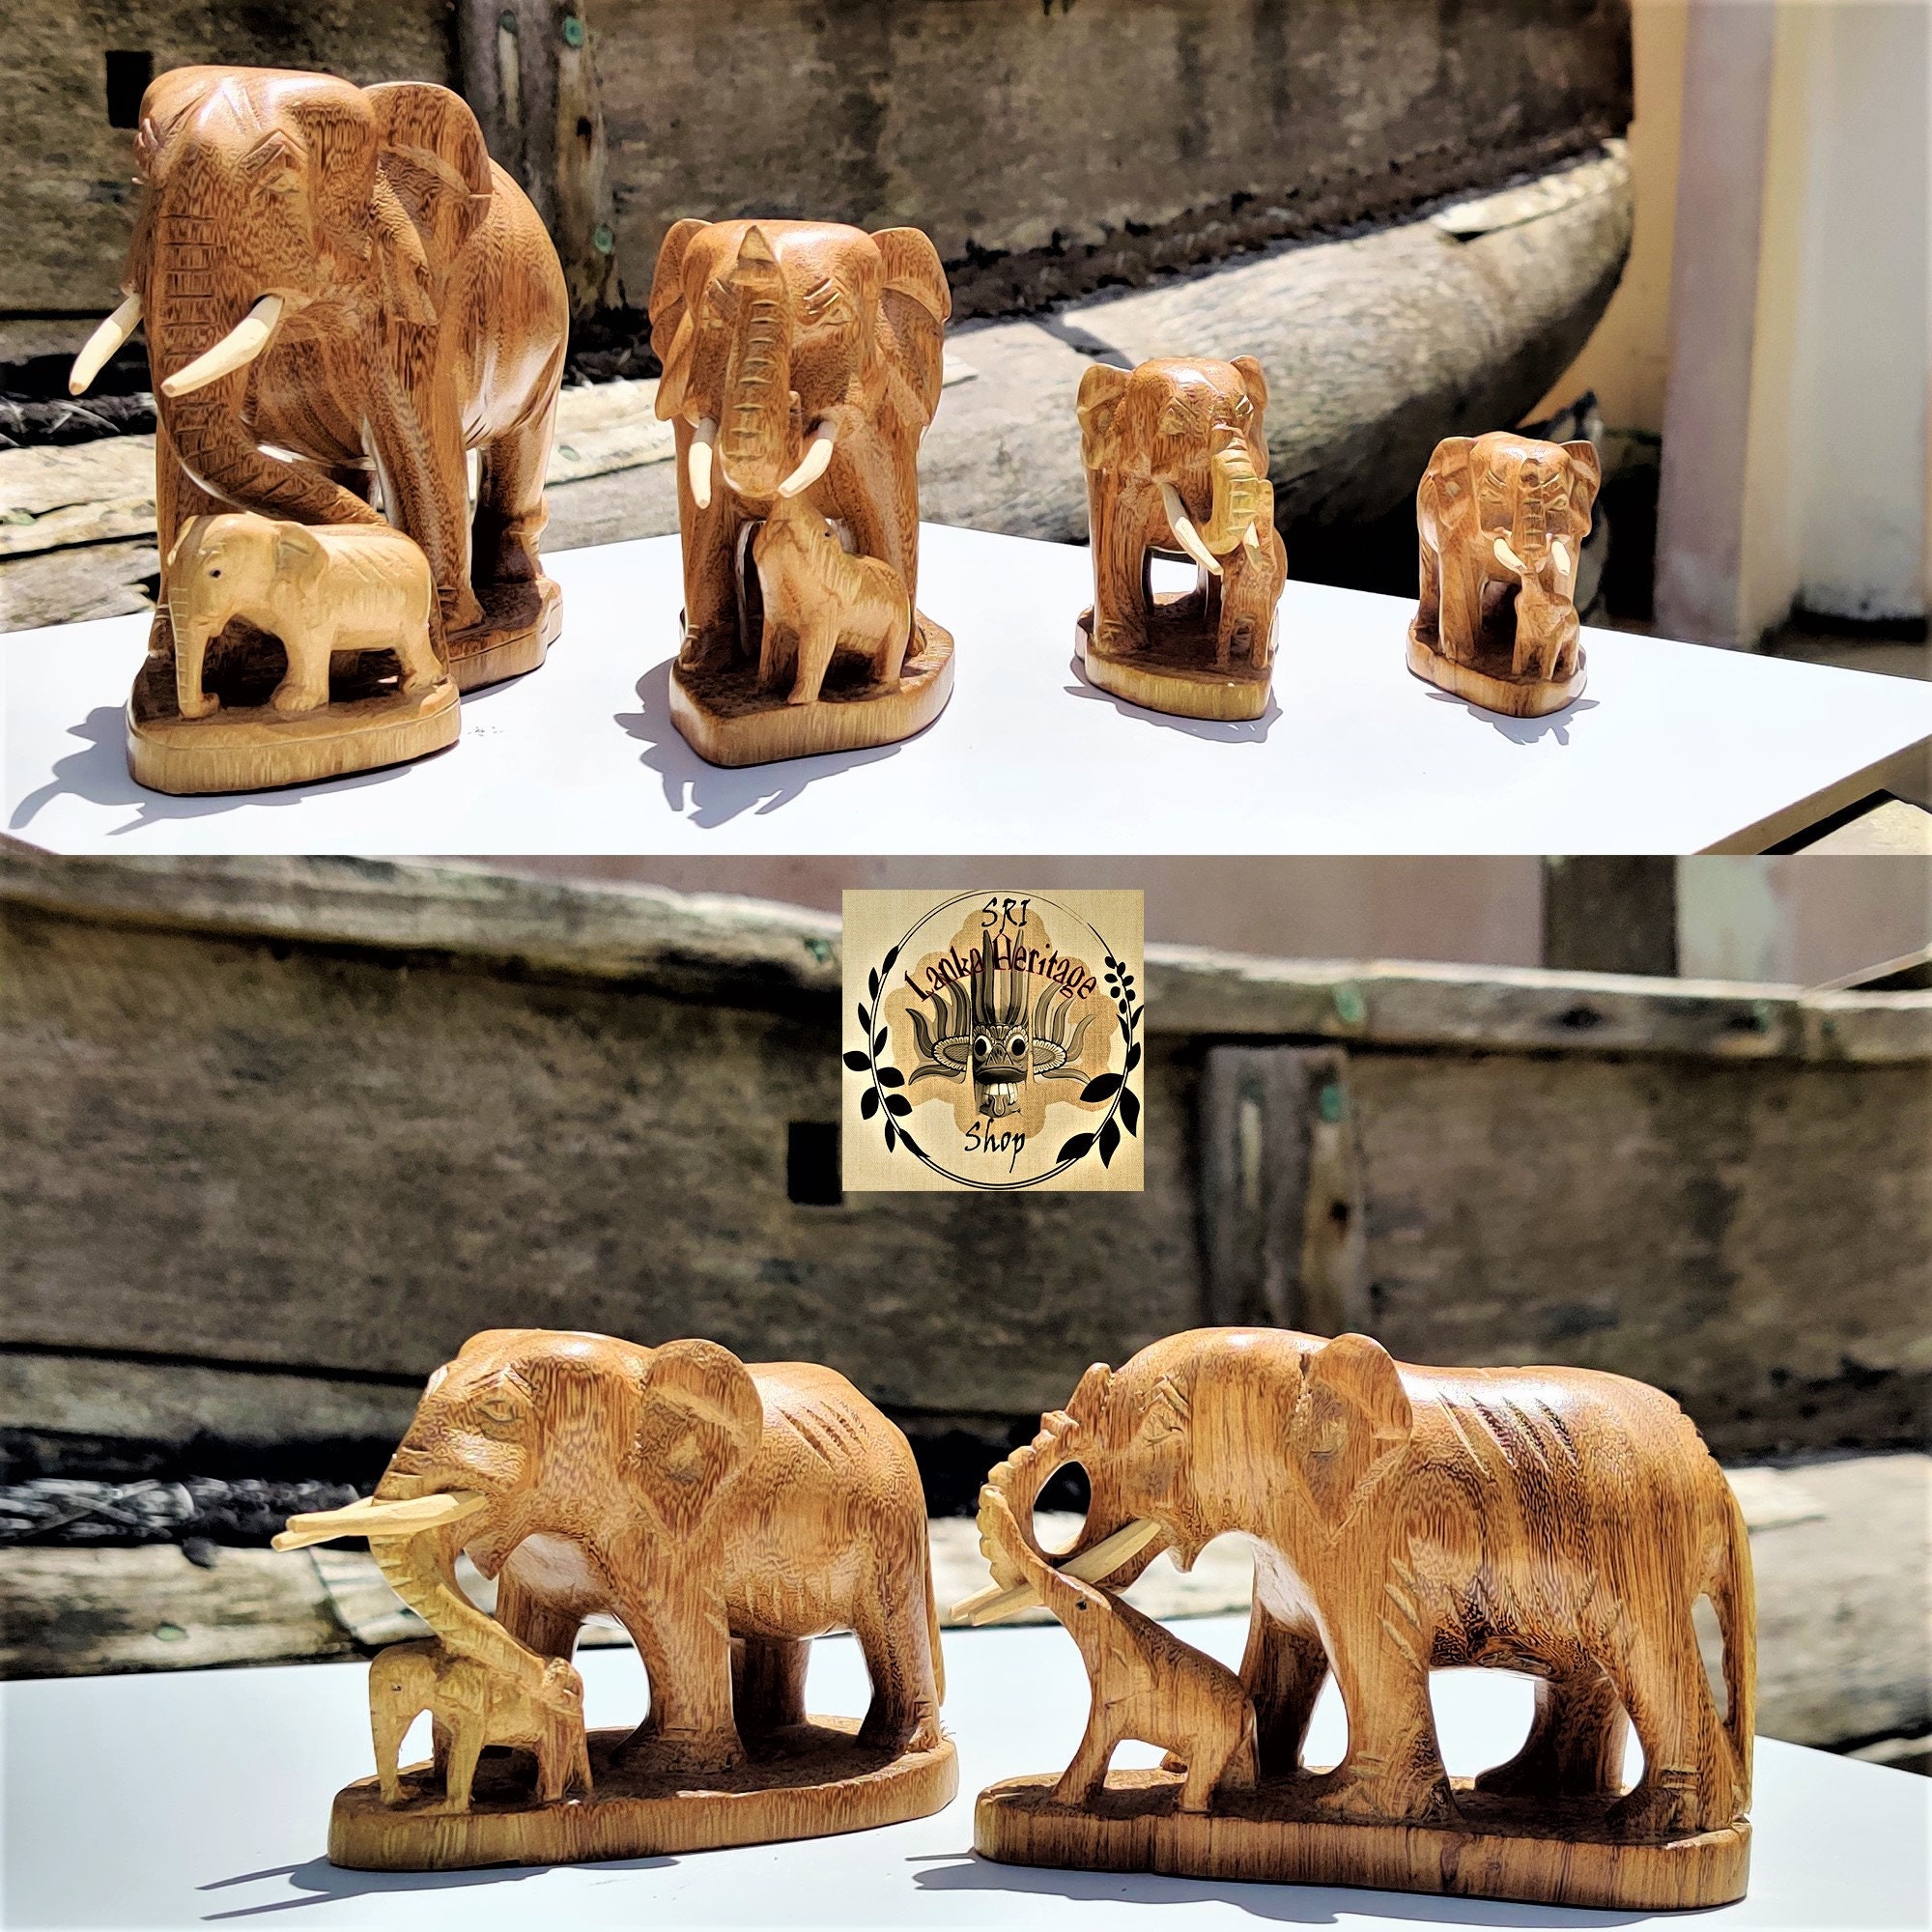 Patas de Elefante de 14 cm. en Madera - Asister